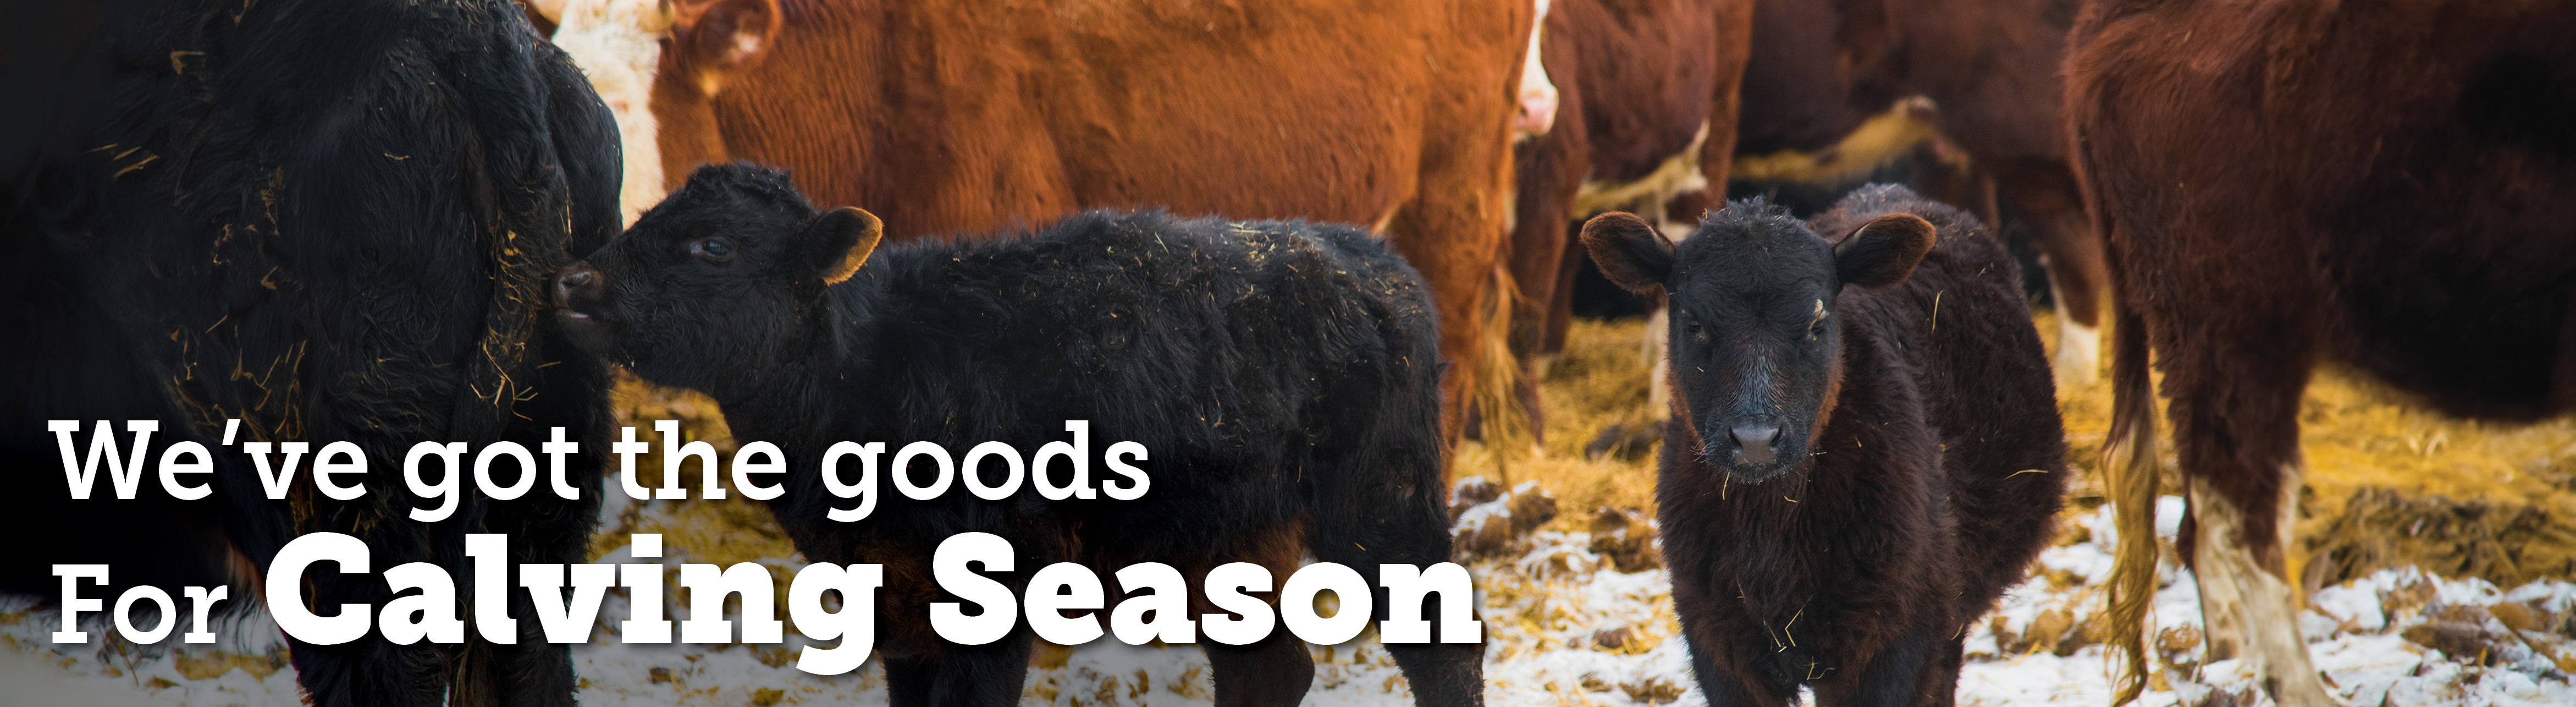 We've got the good for calving season.